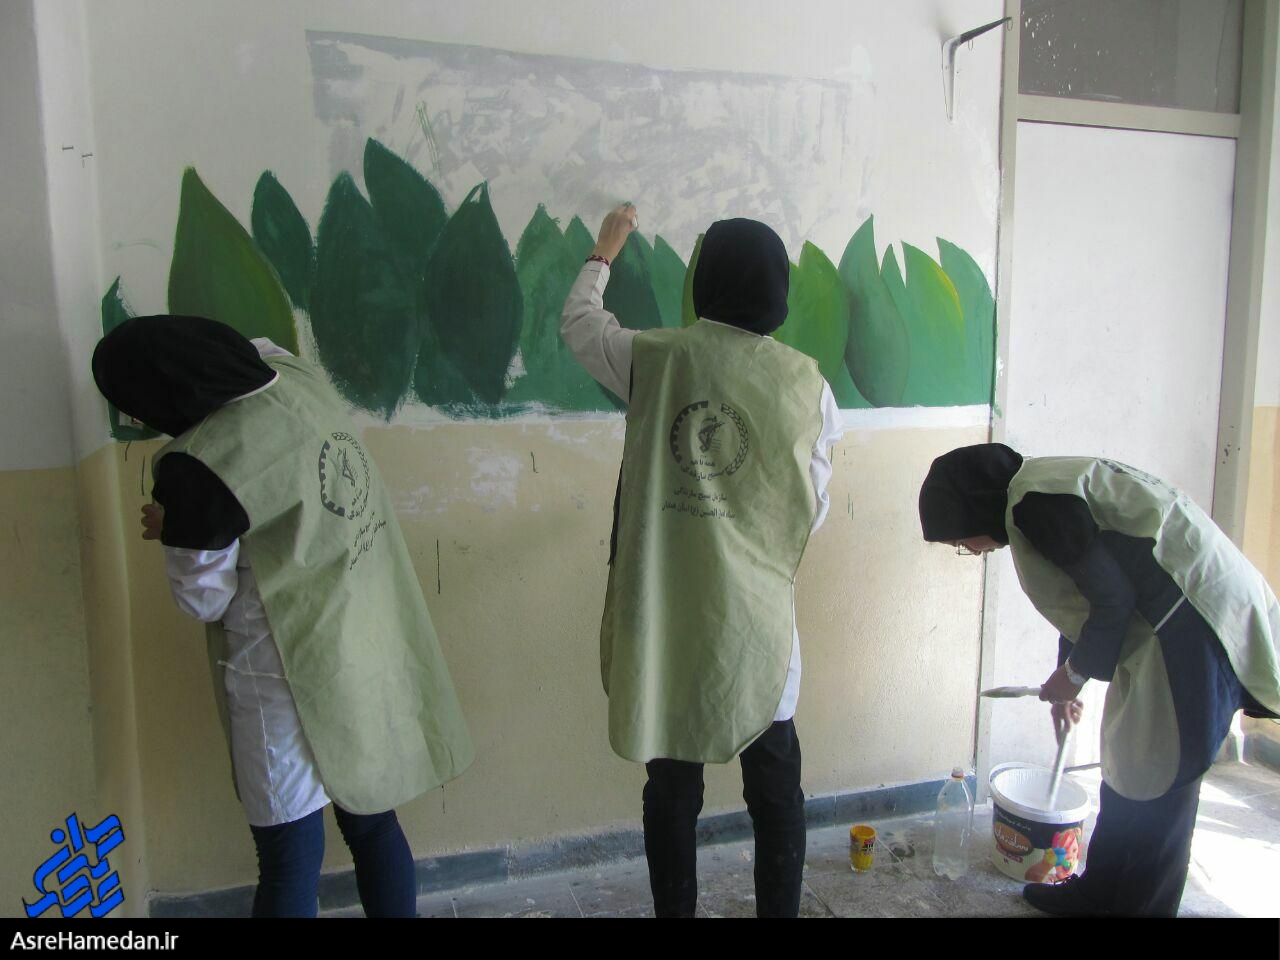 مرمت و رنگ آمیزی مدارس مناطق محروم نهاوند توسط جهادگران بسیجی